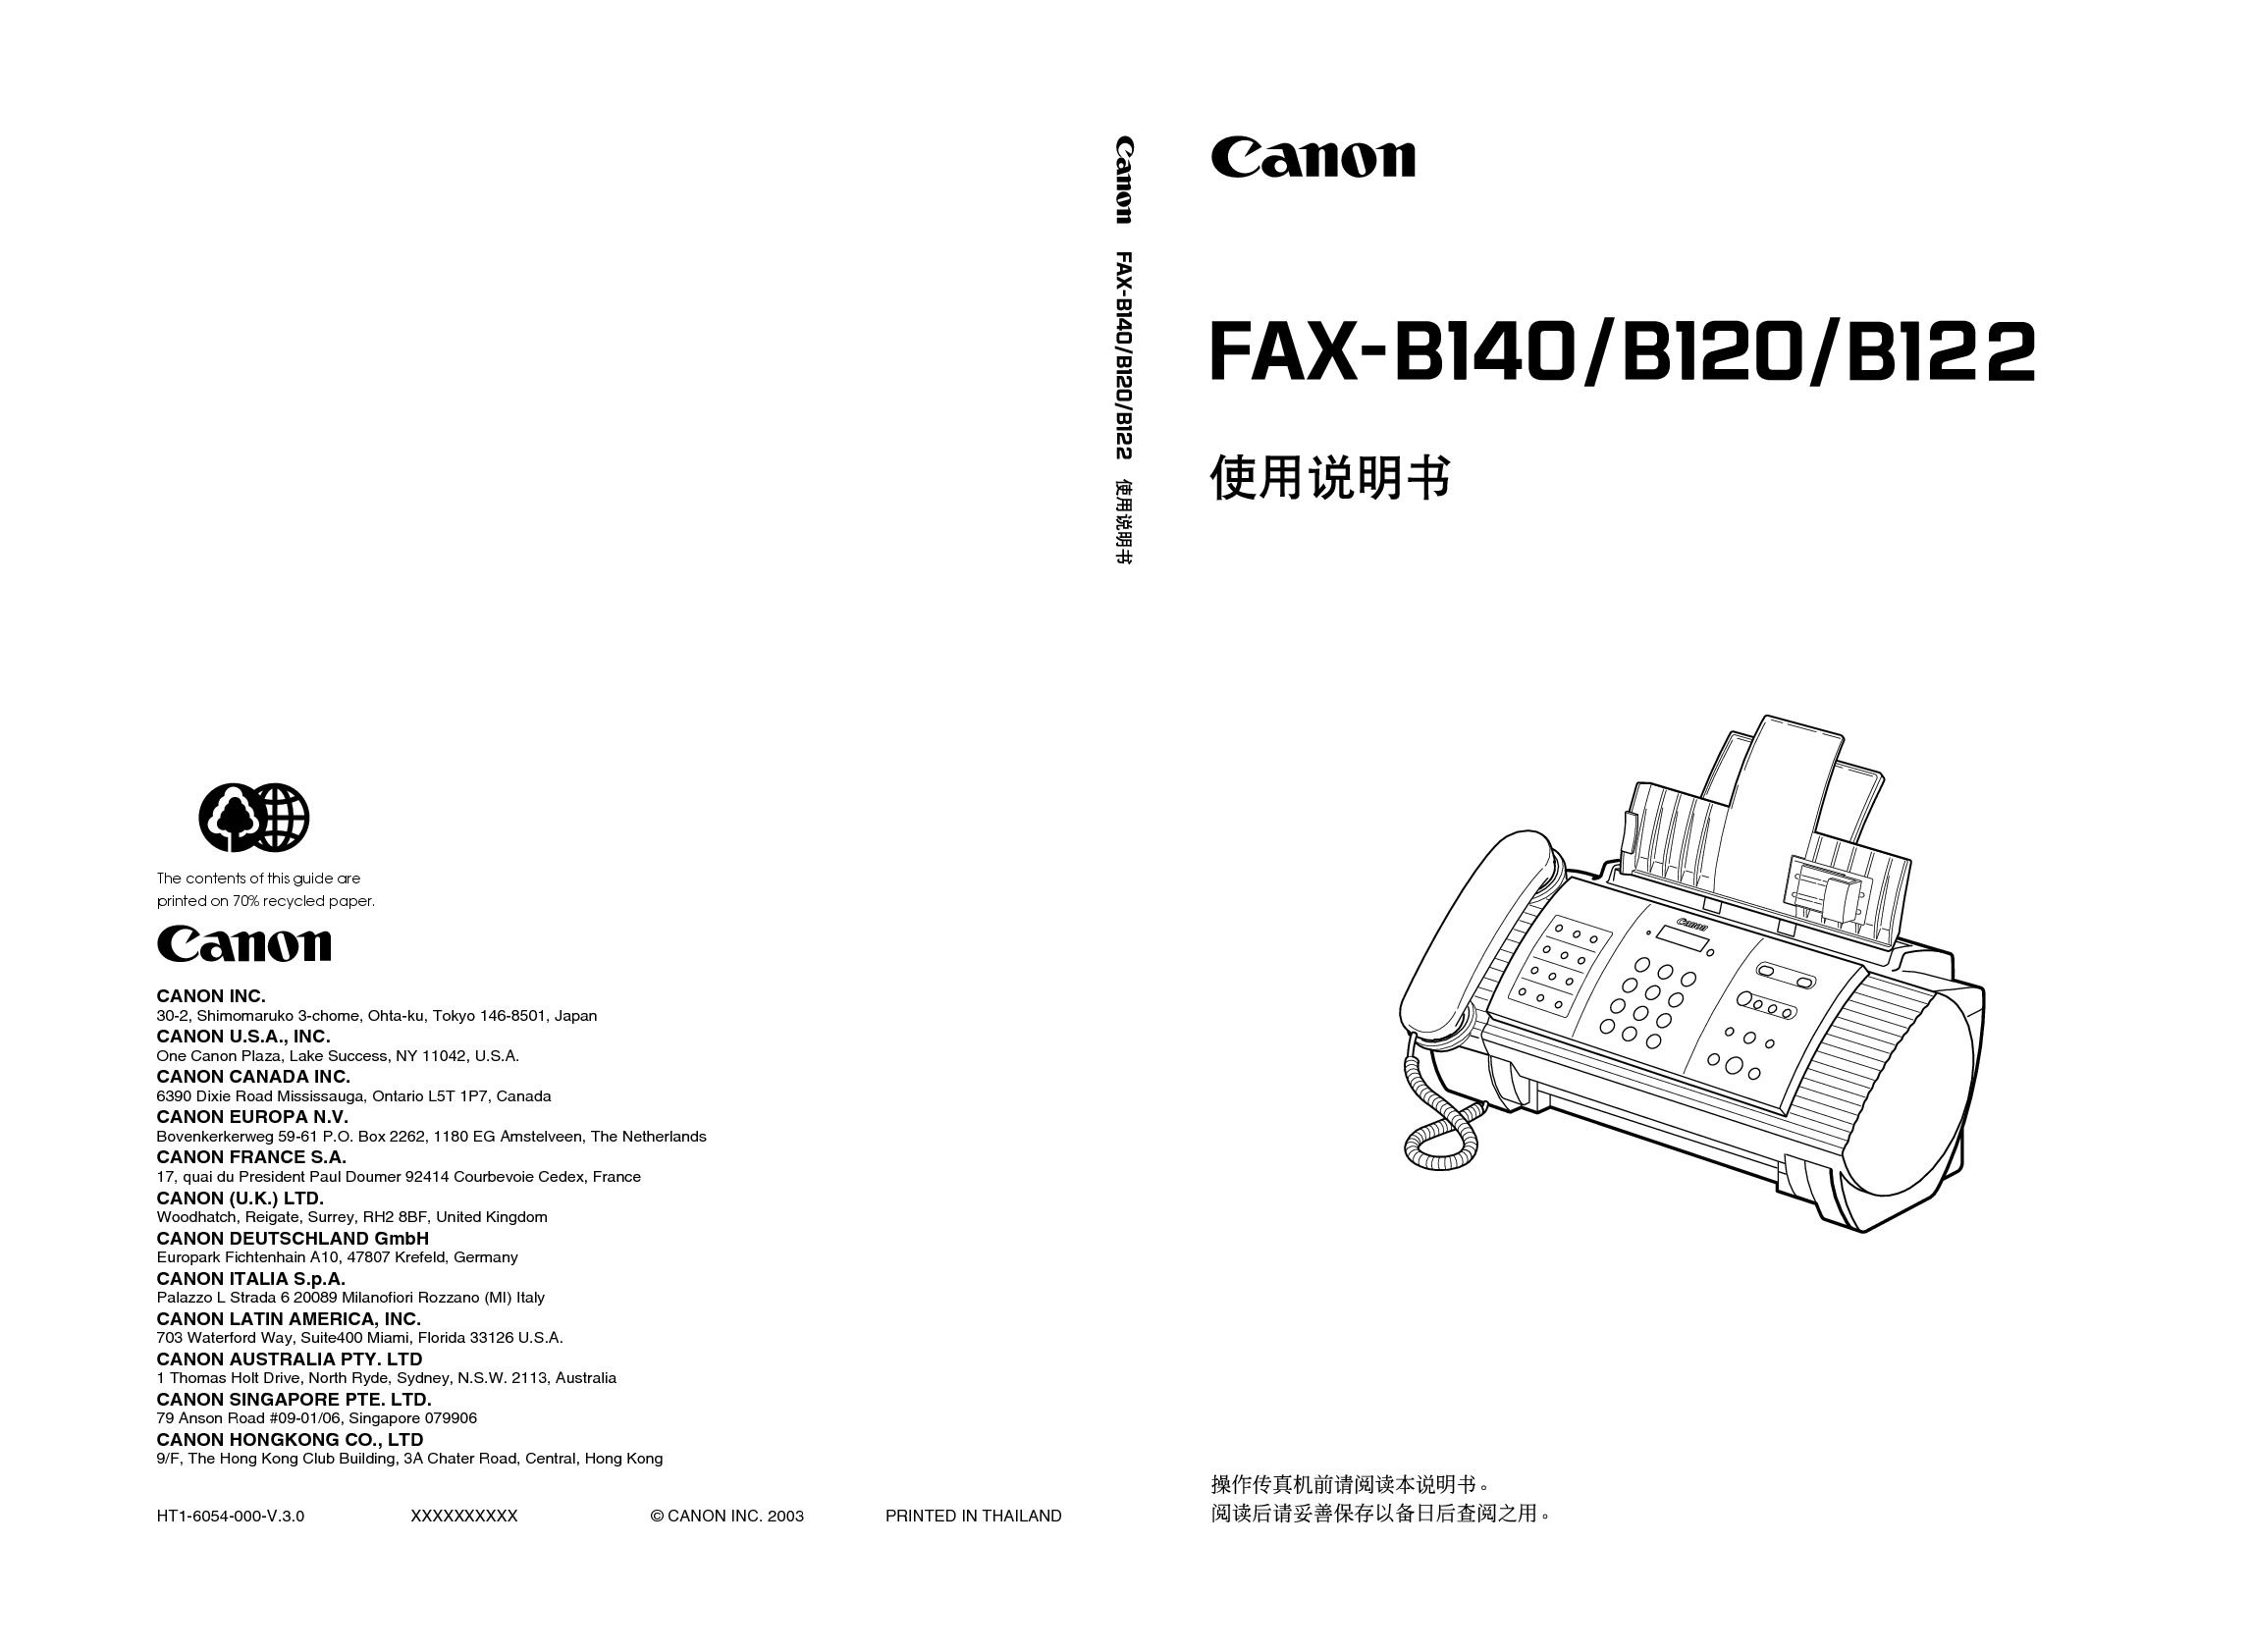 佳能 Canon FAX-B120 用户指南 封面